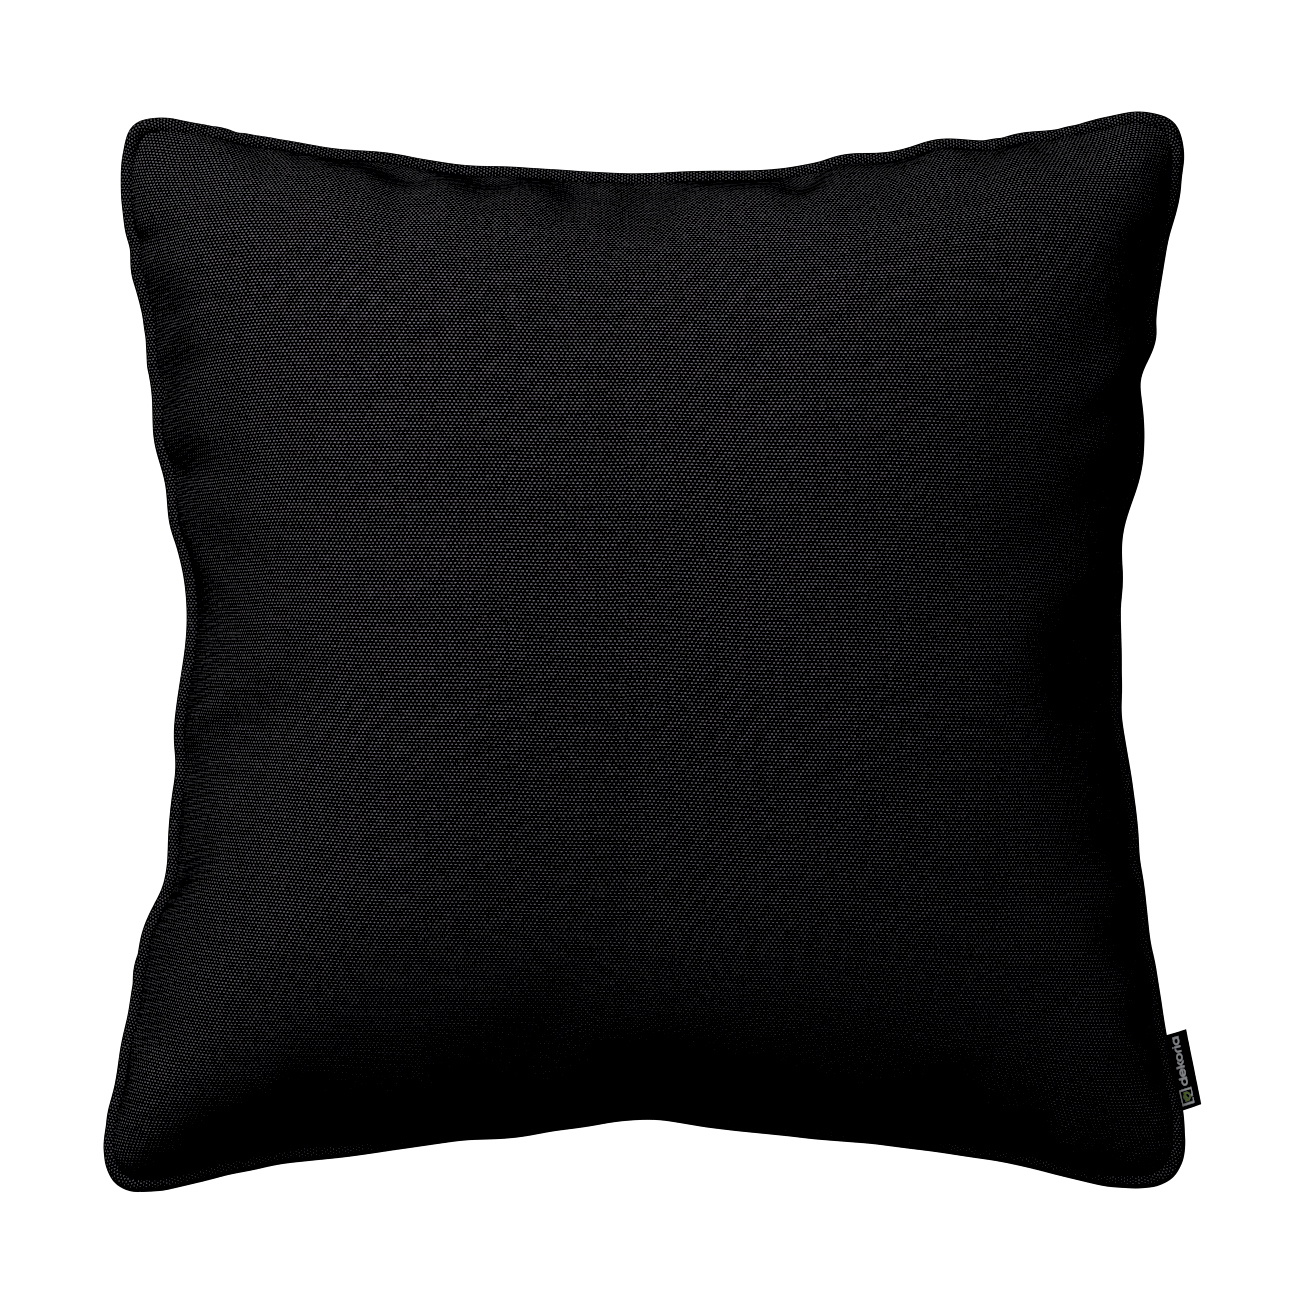 Kissenhülle Gabi mit Paspel, schwarz, 60 x 60 cm, Etna (705-00) günstig online kaufen